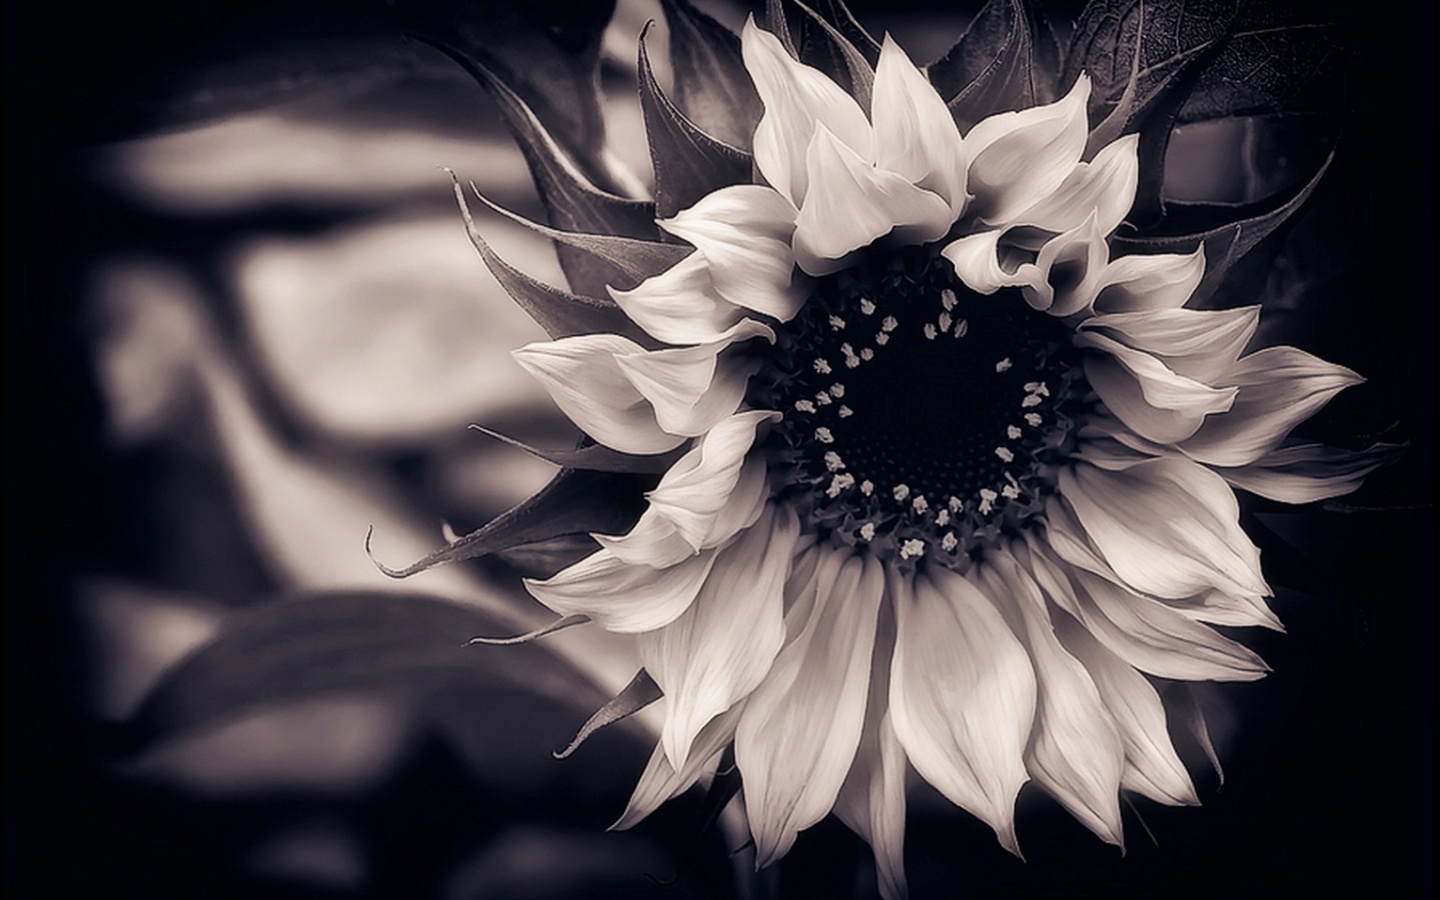 Sunflower-Black-and-White-Flower-Wallpaper.jpg